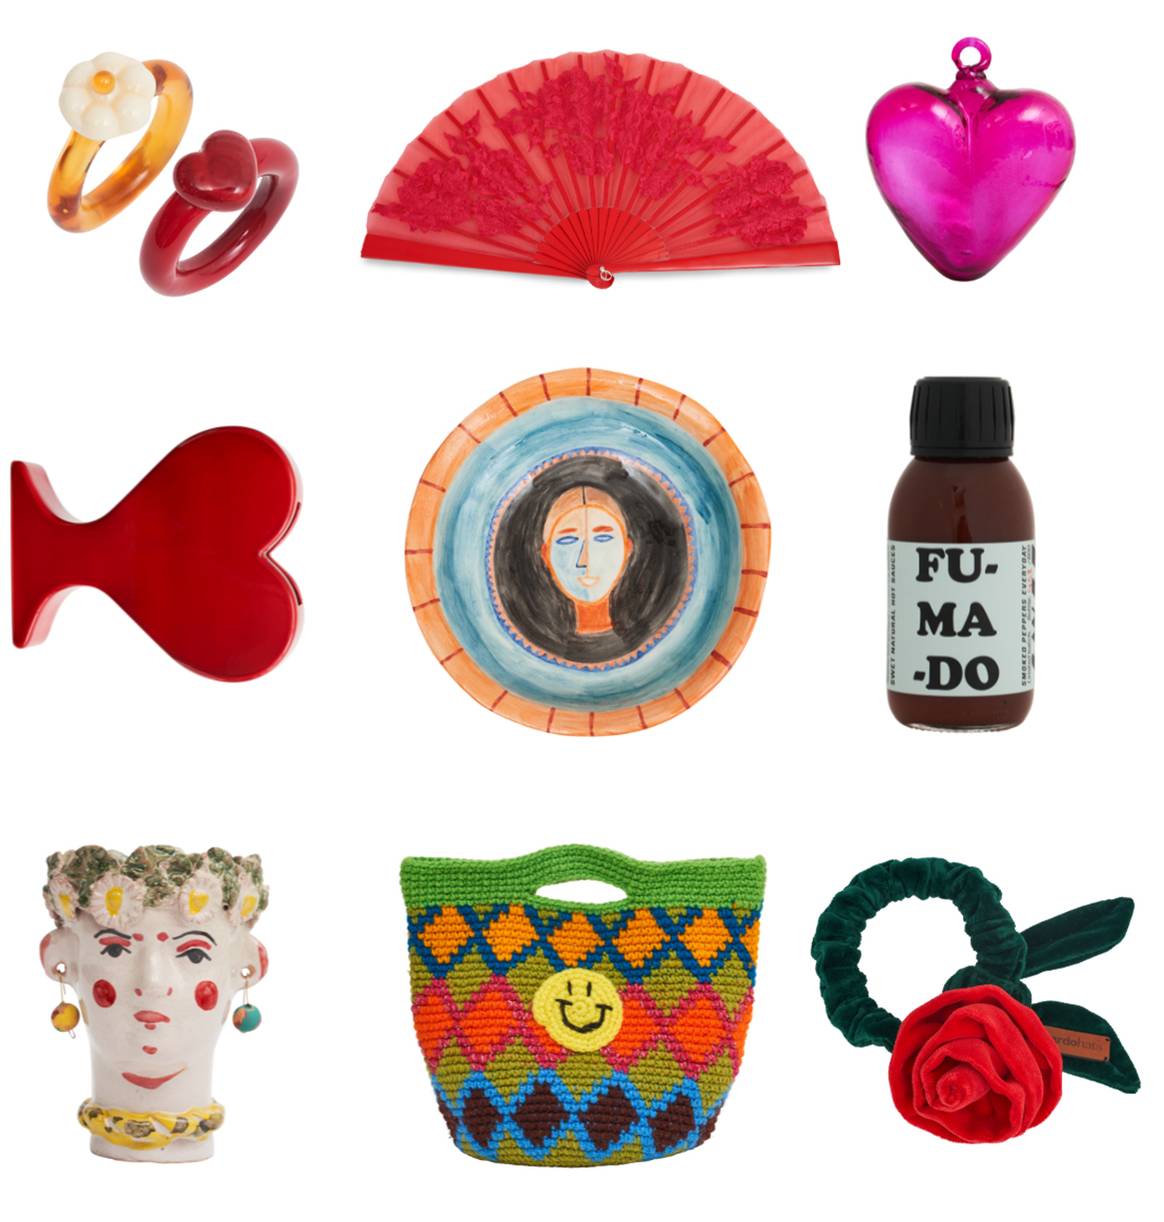 Selección de objetos de las marcas escogidas para participar de la activación “Olé Olé Le Bon Marché”.